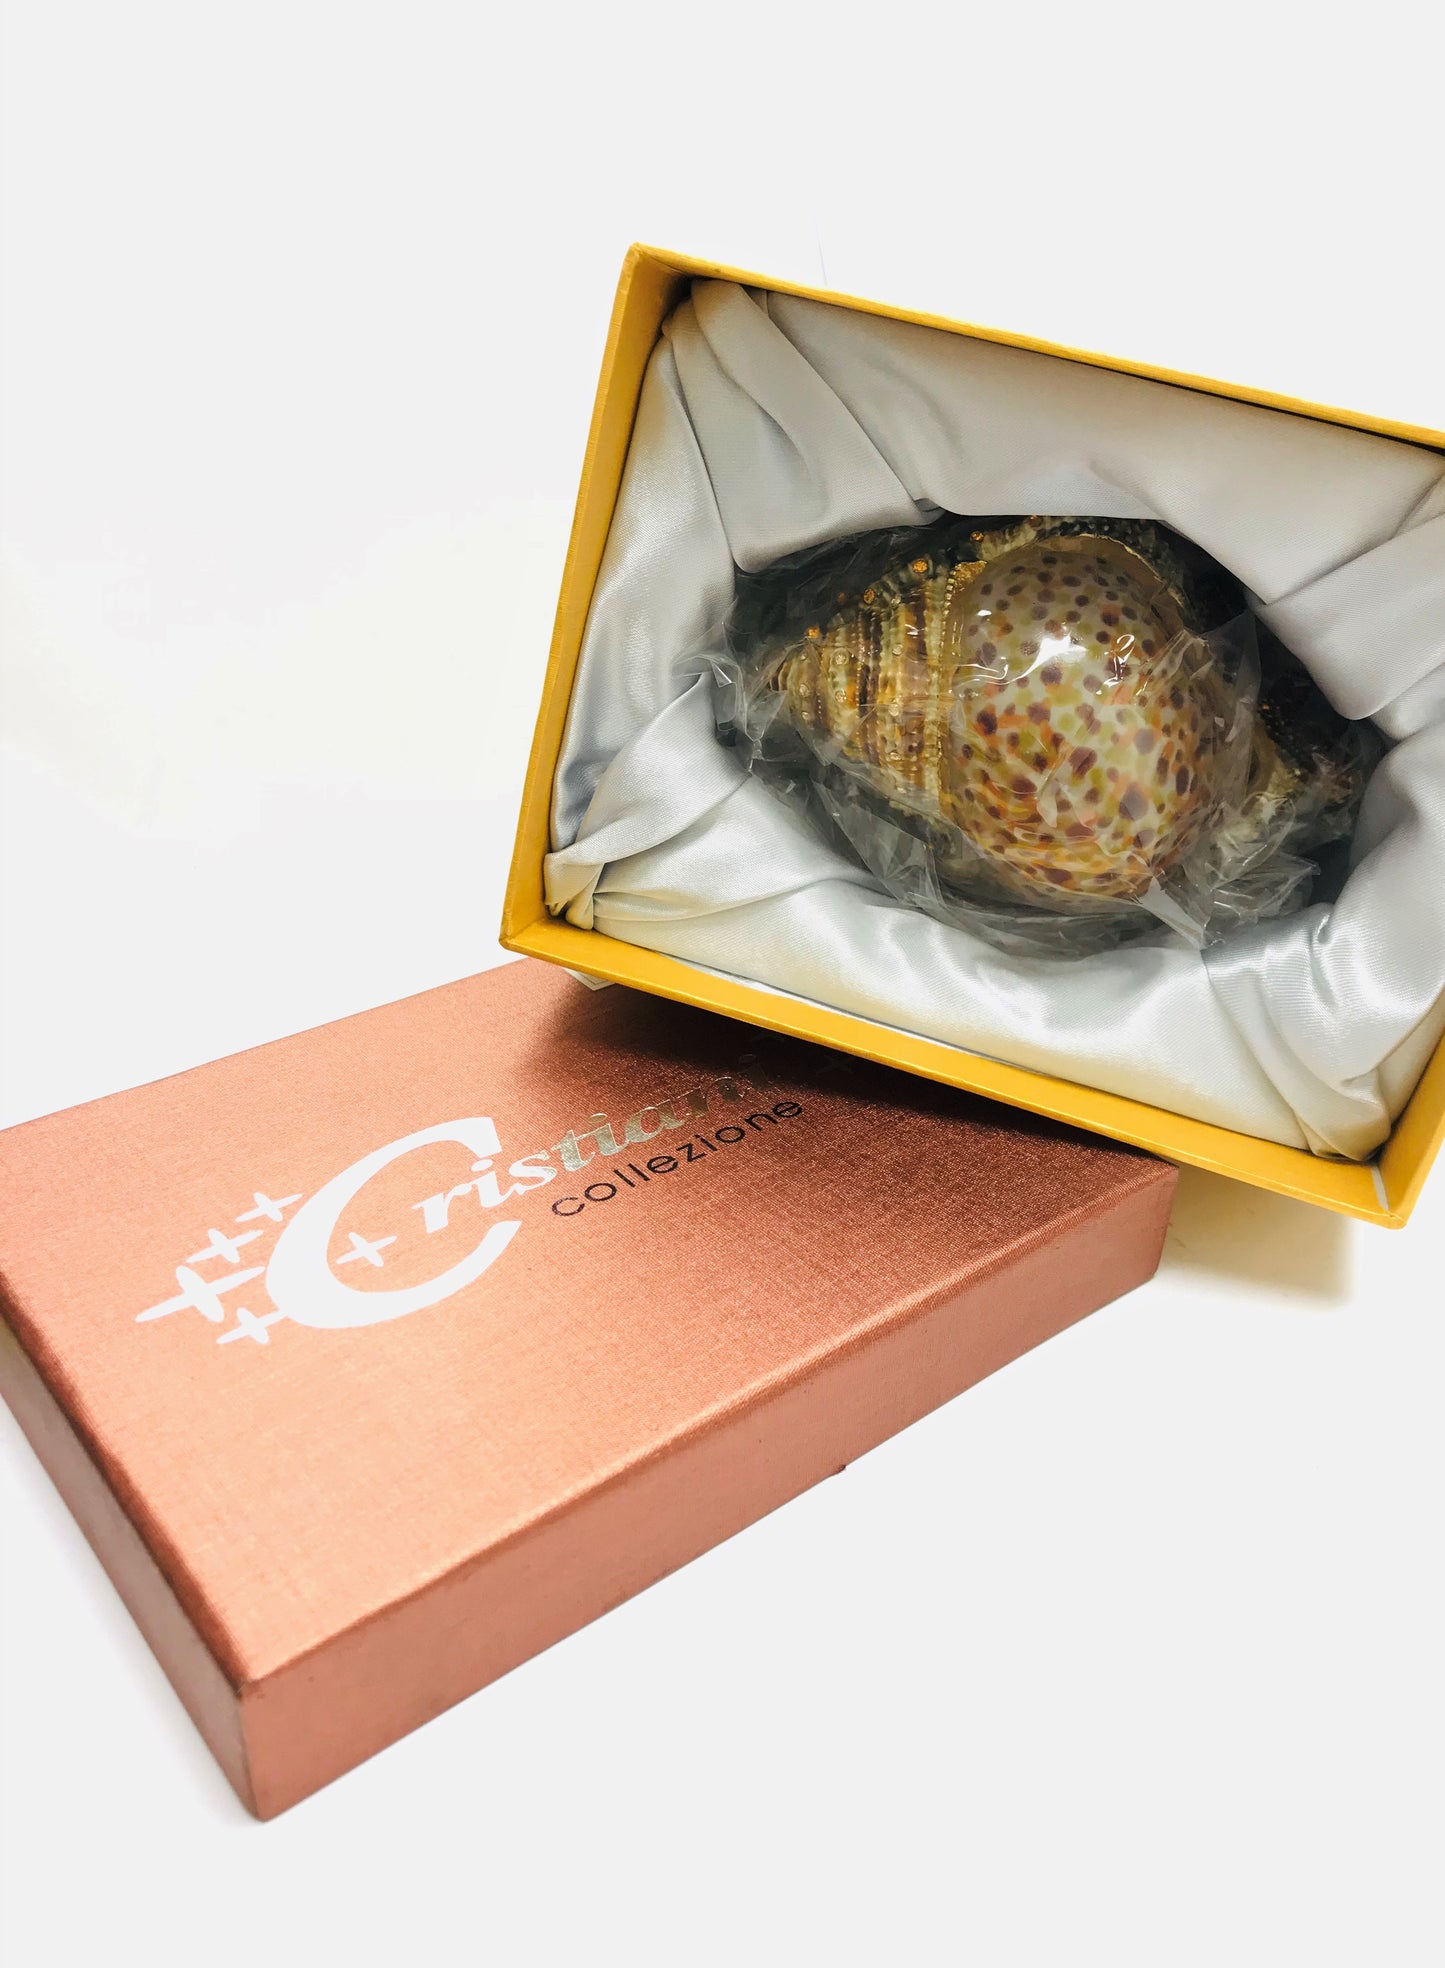 Cristiani Collezione Large Snail Trinket Box